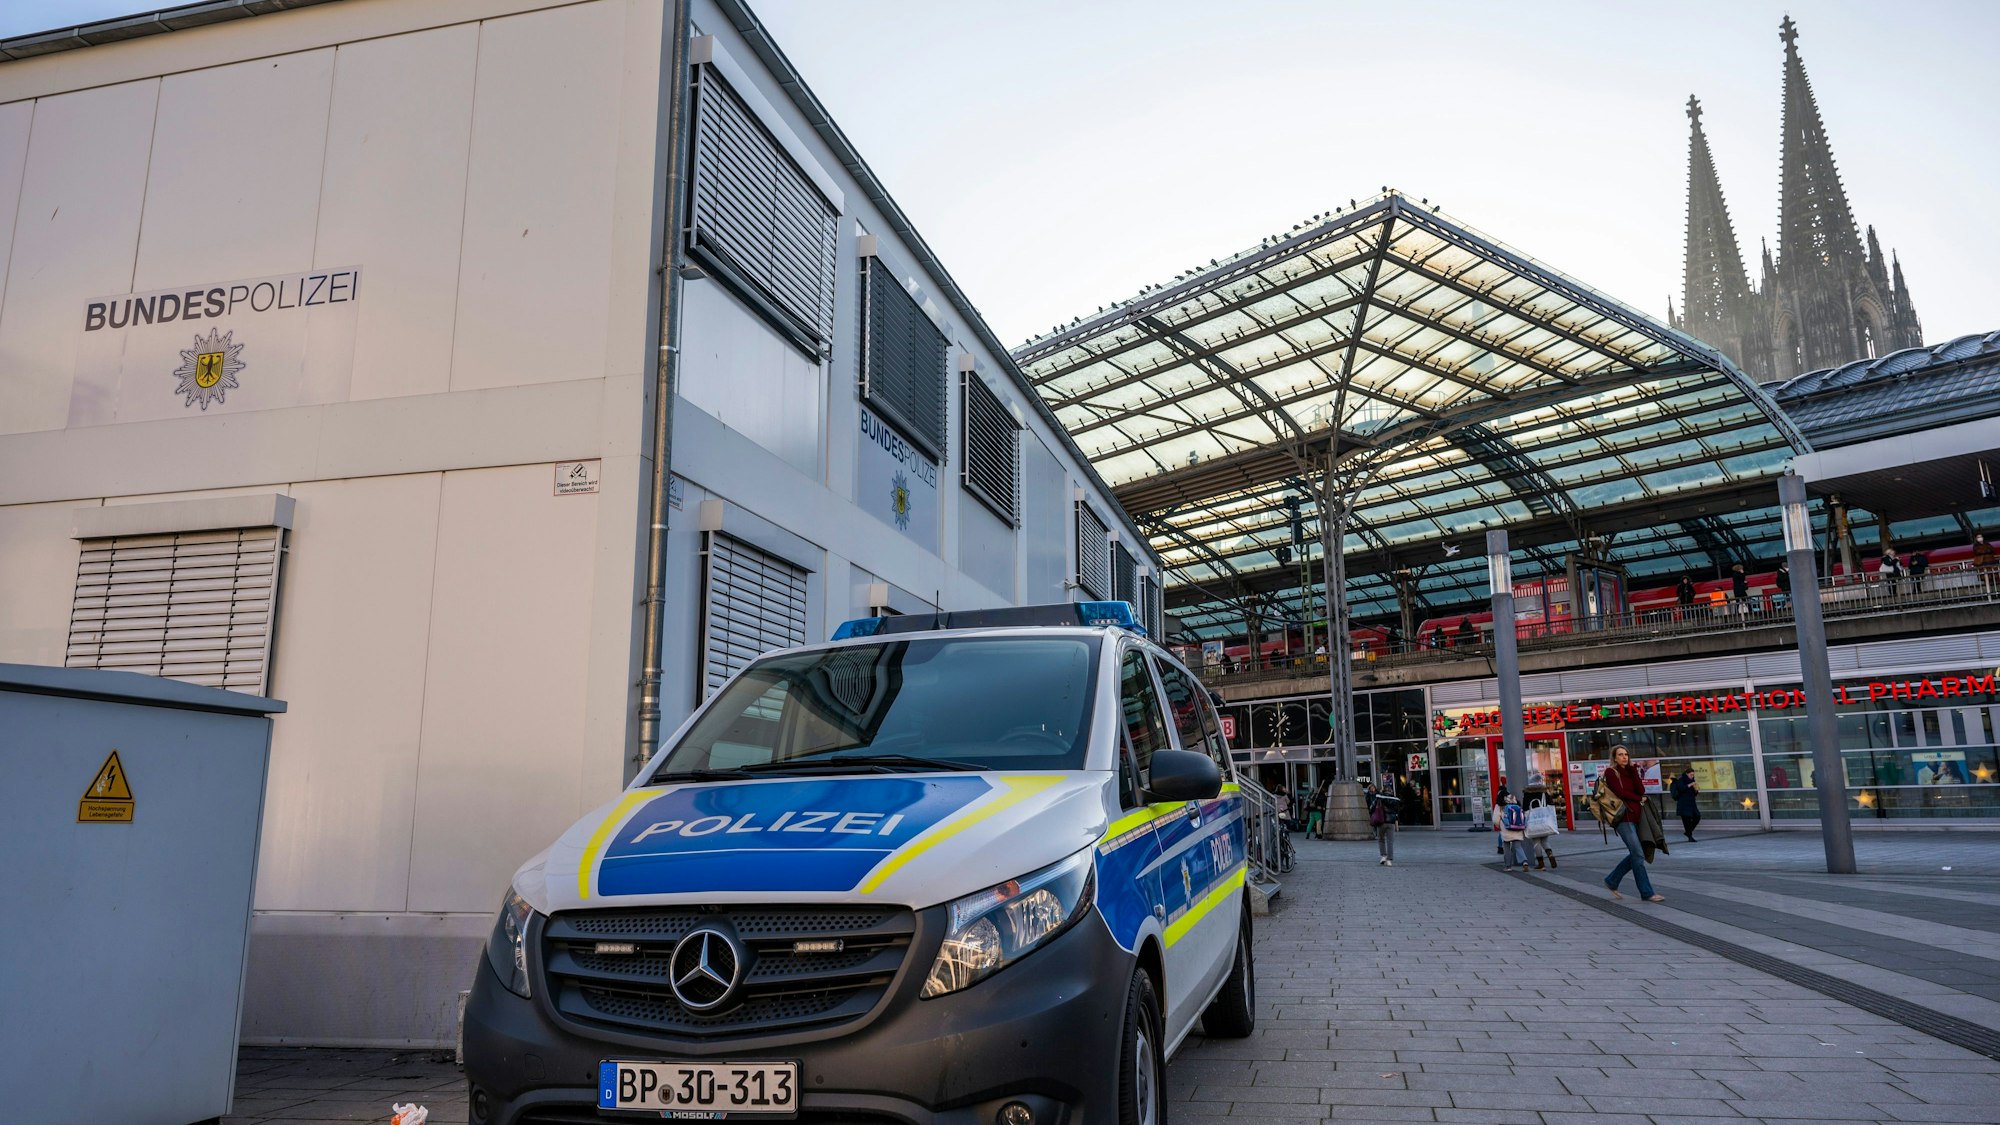 Bürocontainer der Bundespolizei auf dem Breslauer Platz am Hauptbahnhof mit einem Einsatzfahrzeug im Vordergrund.